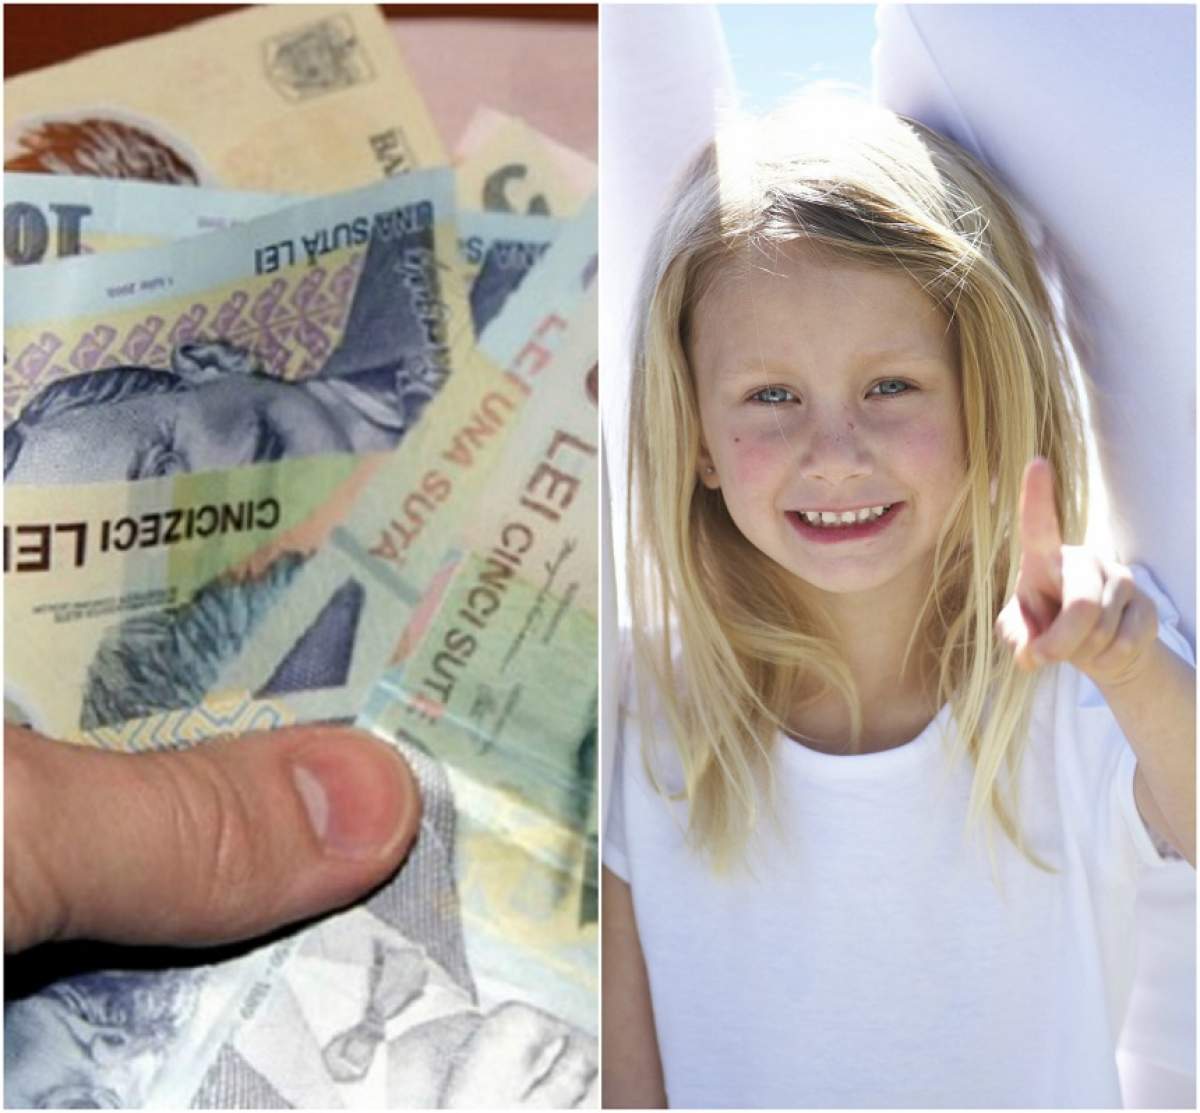 Incredibil! O fetiță de șase ani, somată să-și plătească datoria. Cum a fost posibil